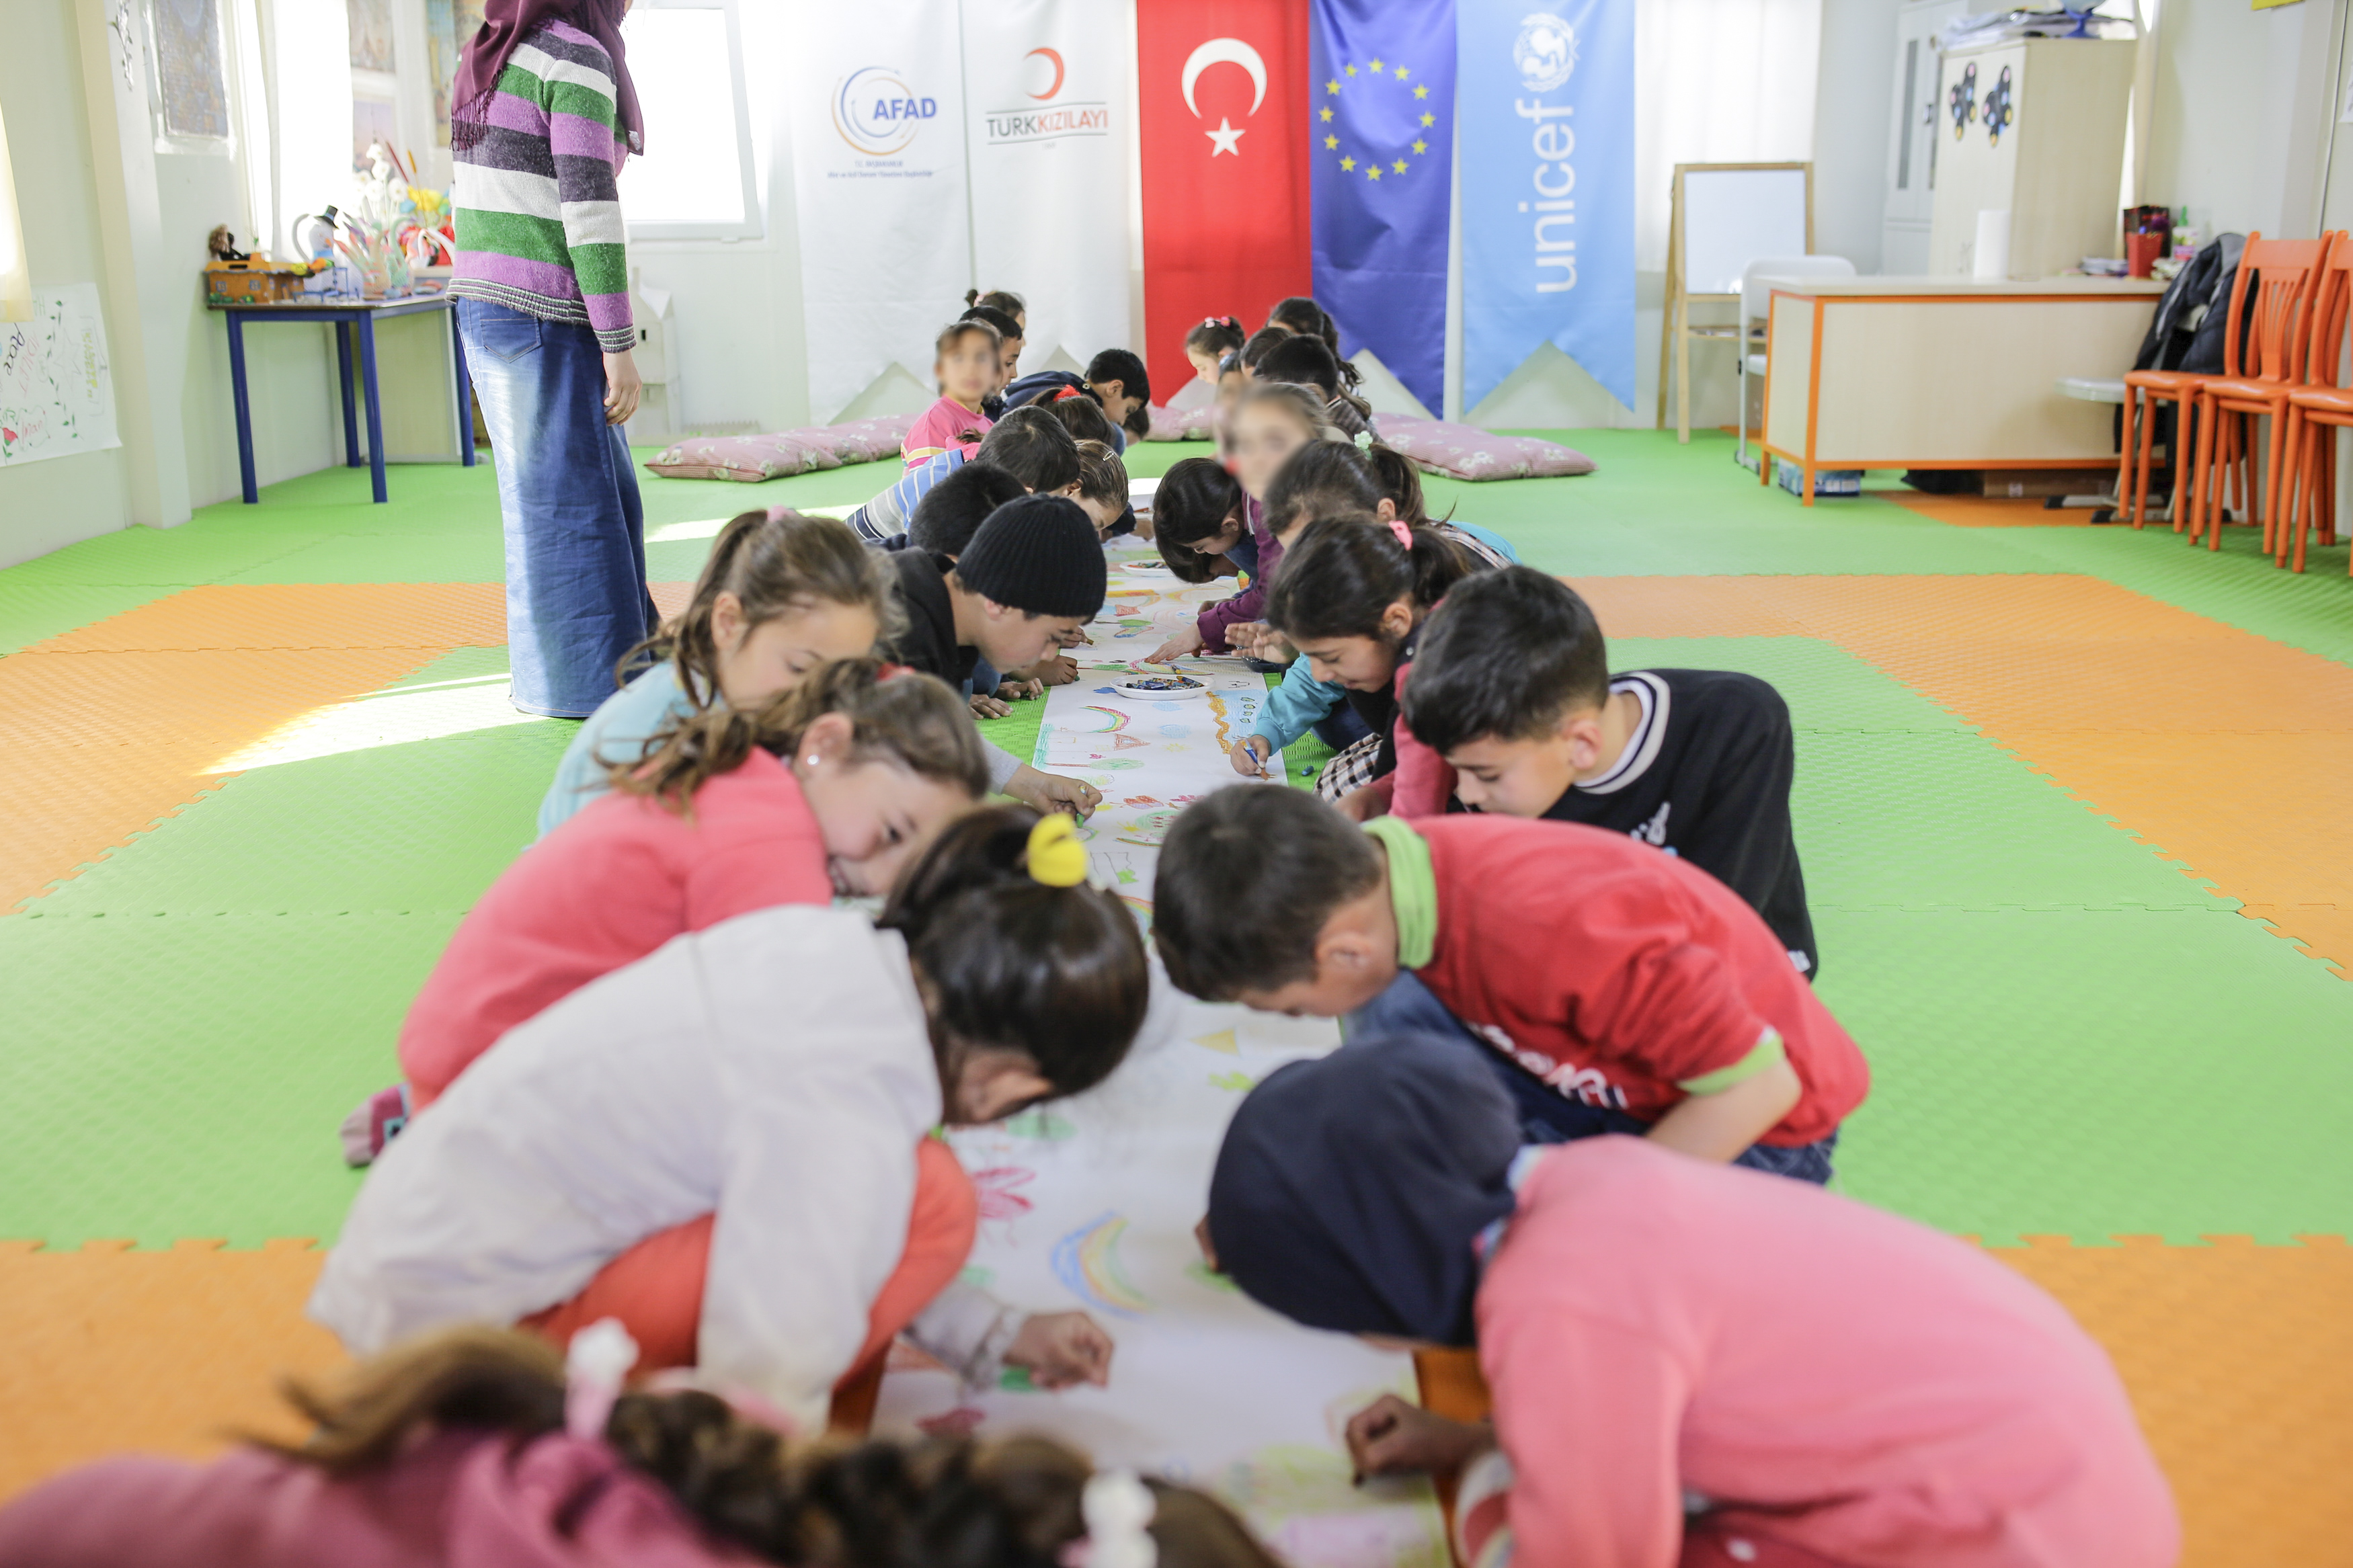 Syyrialaislapsia piirtämässä. Taustalla Turkin, EU:n ja Unicefin tunnukset.